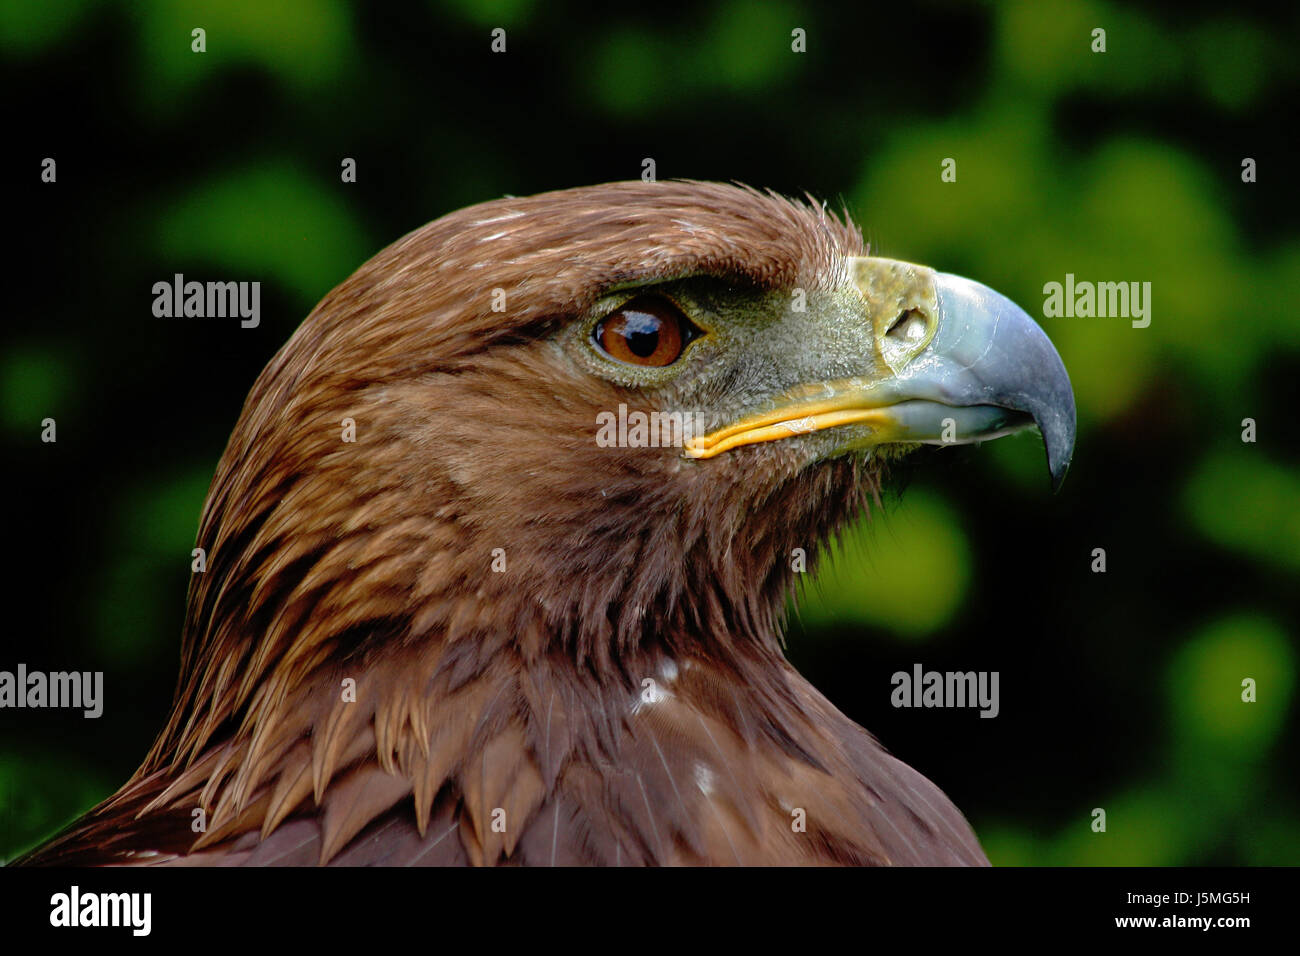 Tiere Vogel starke Porträt Österreicher Auge Orgel Vögel sehen mit einem Blick finden Sie unter Anzeigen Stockfoto